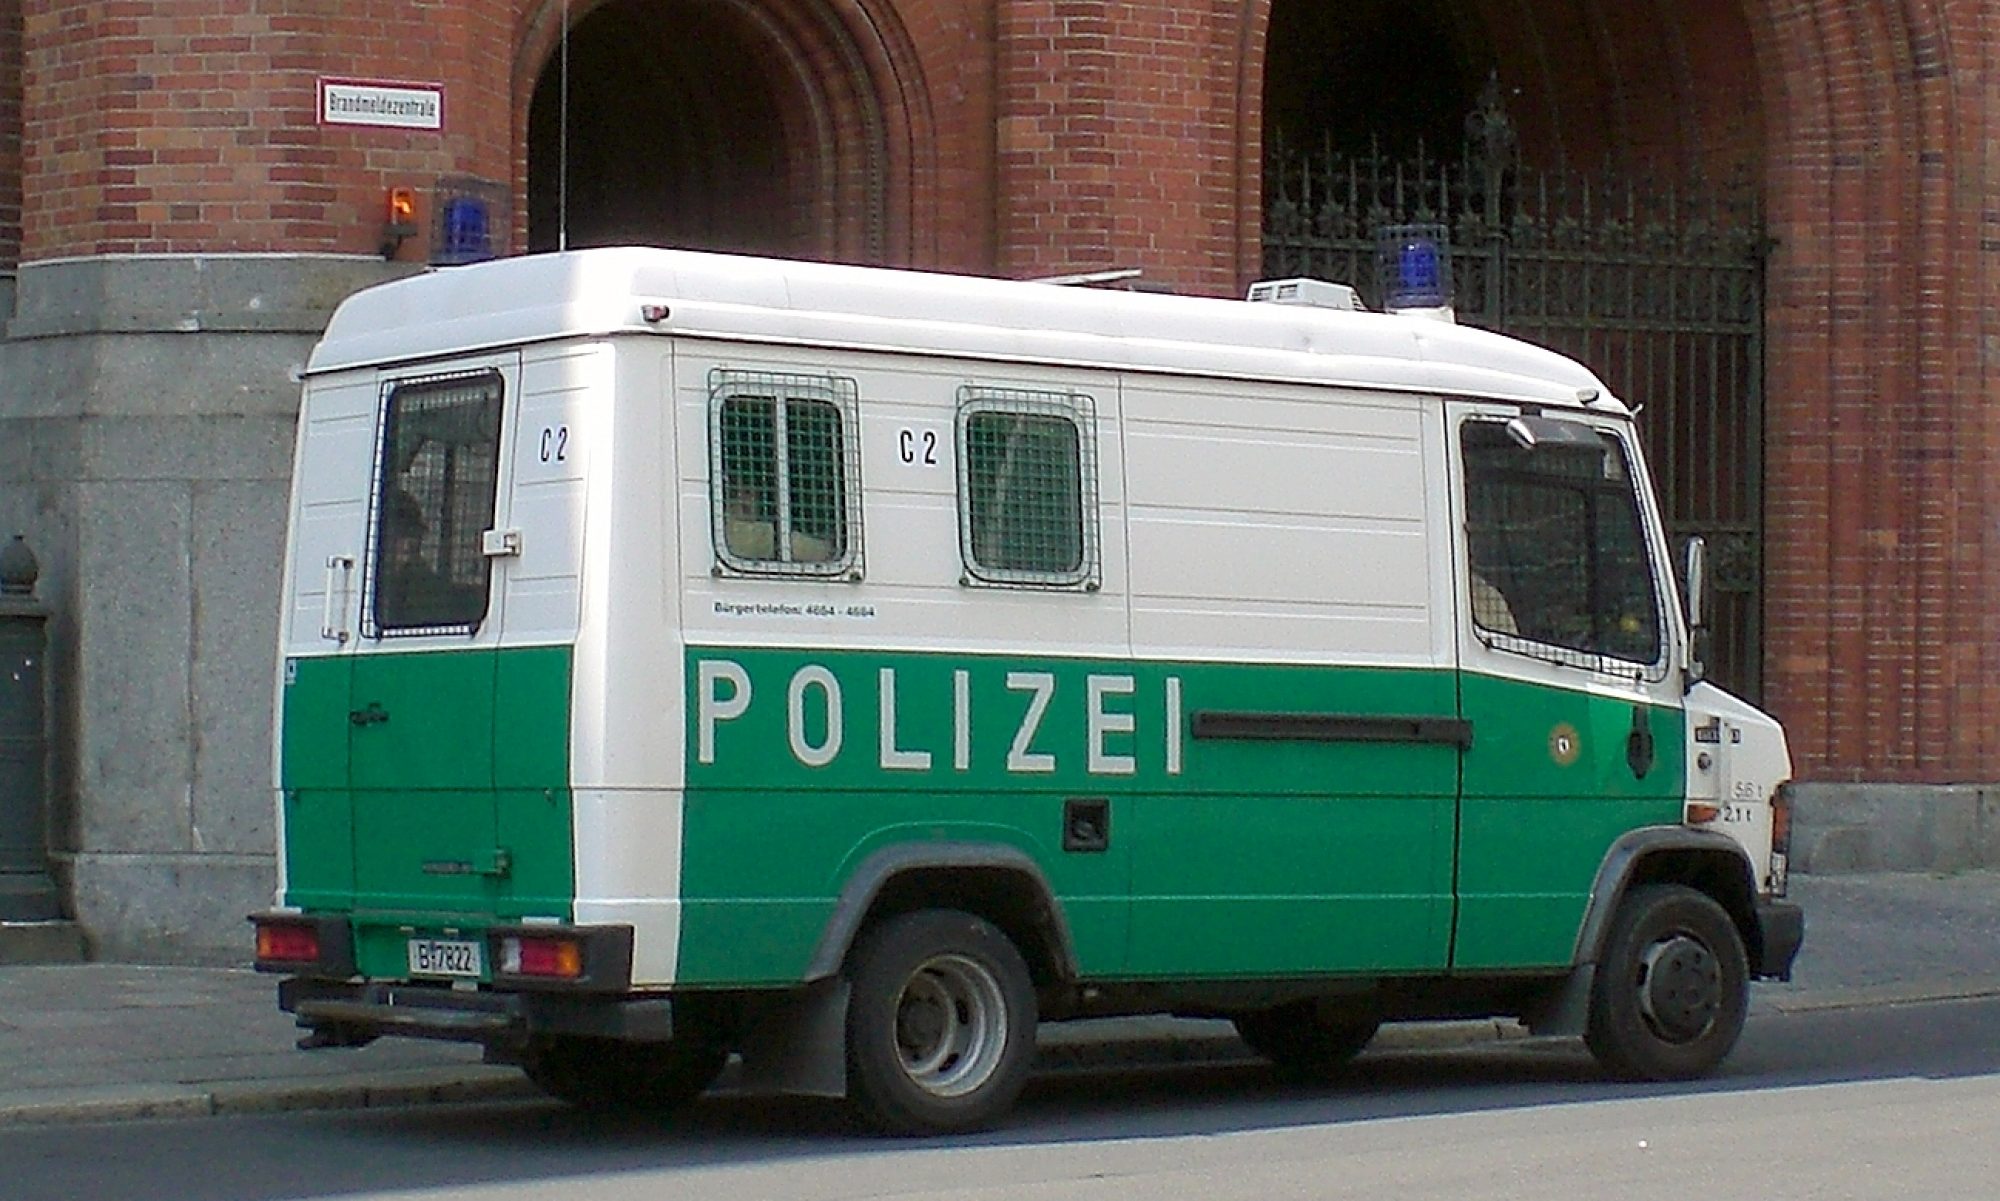 PolizeiNews Berlin